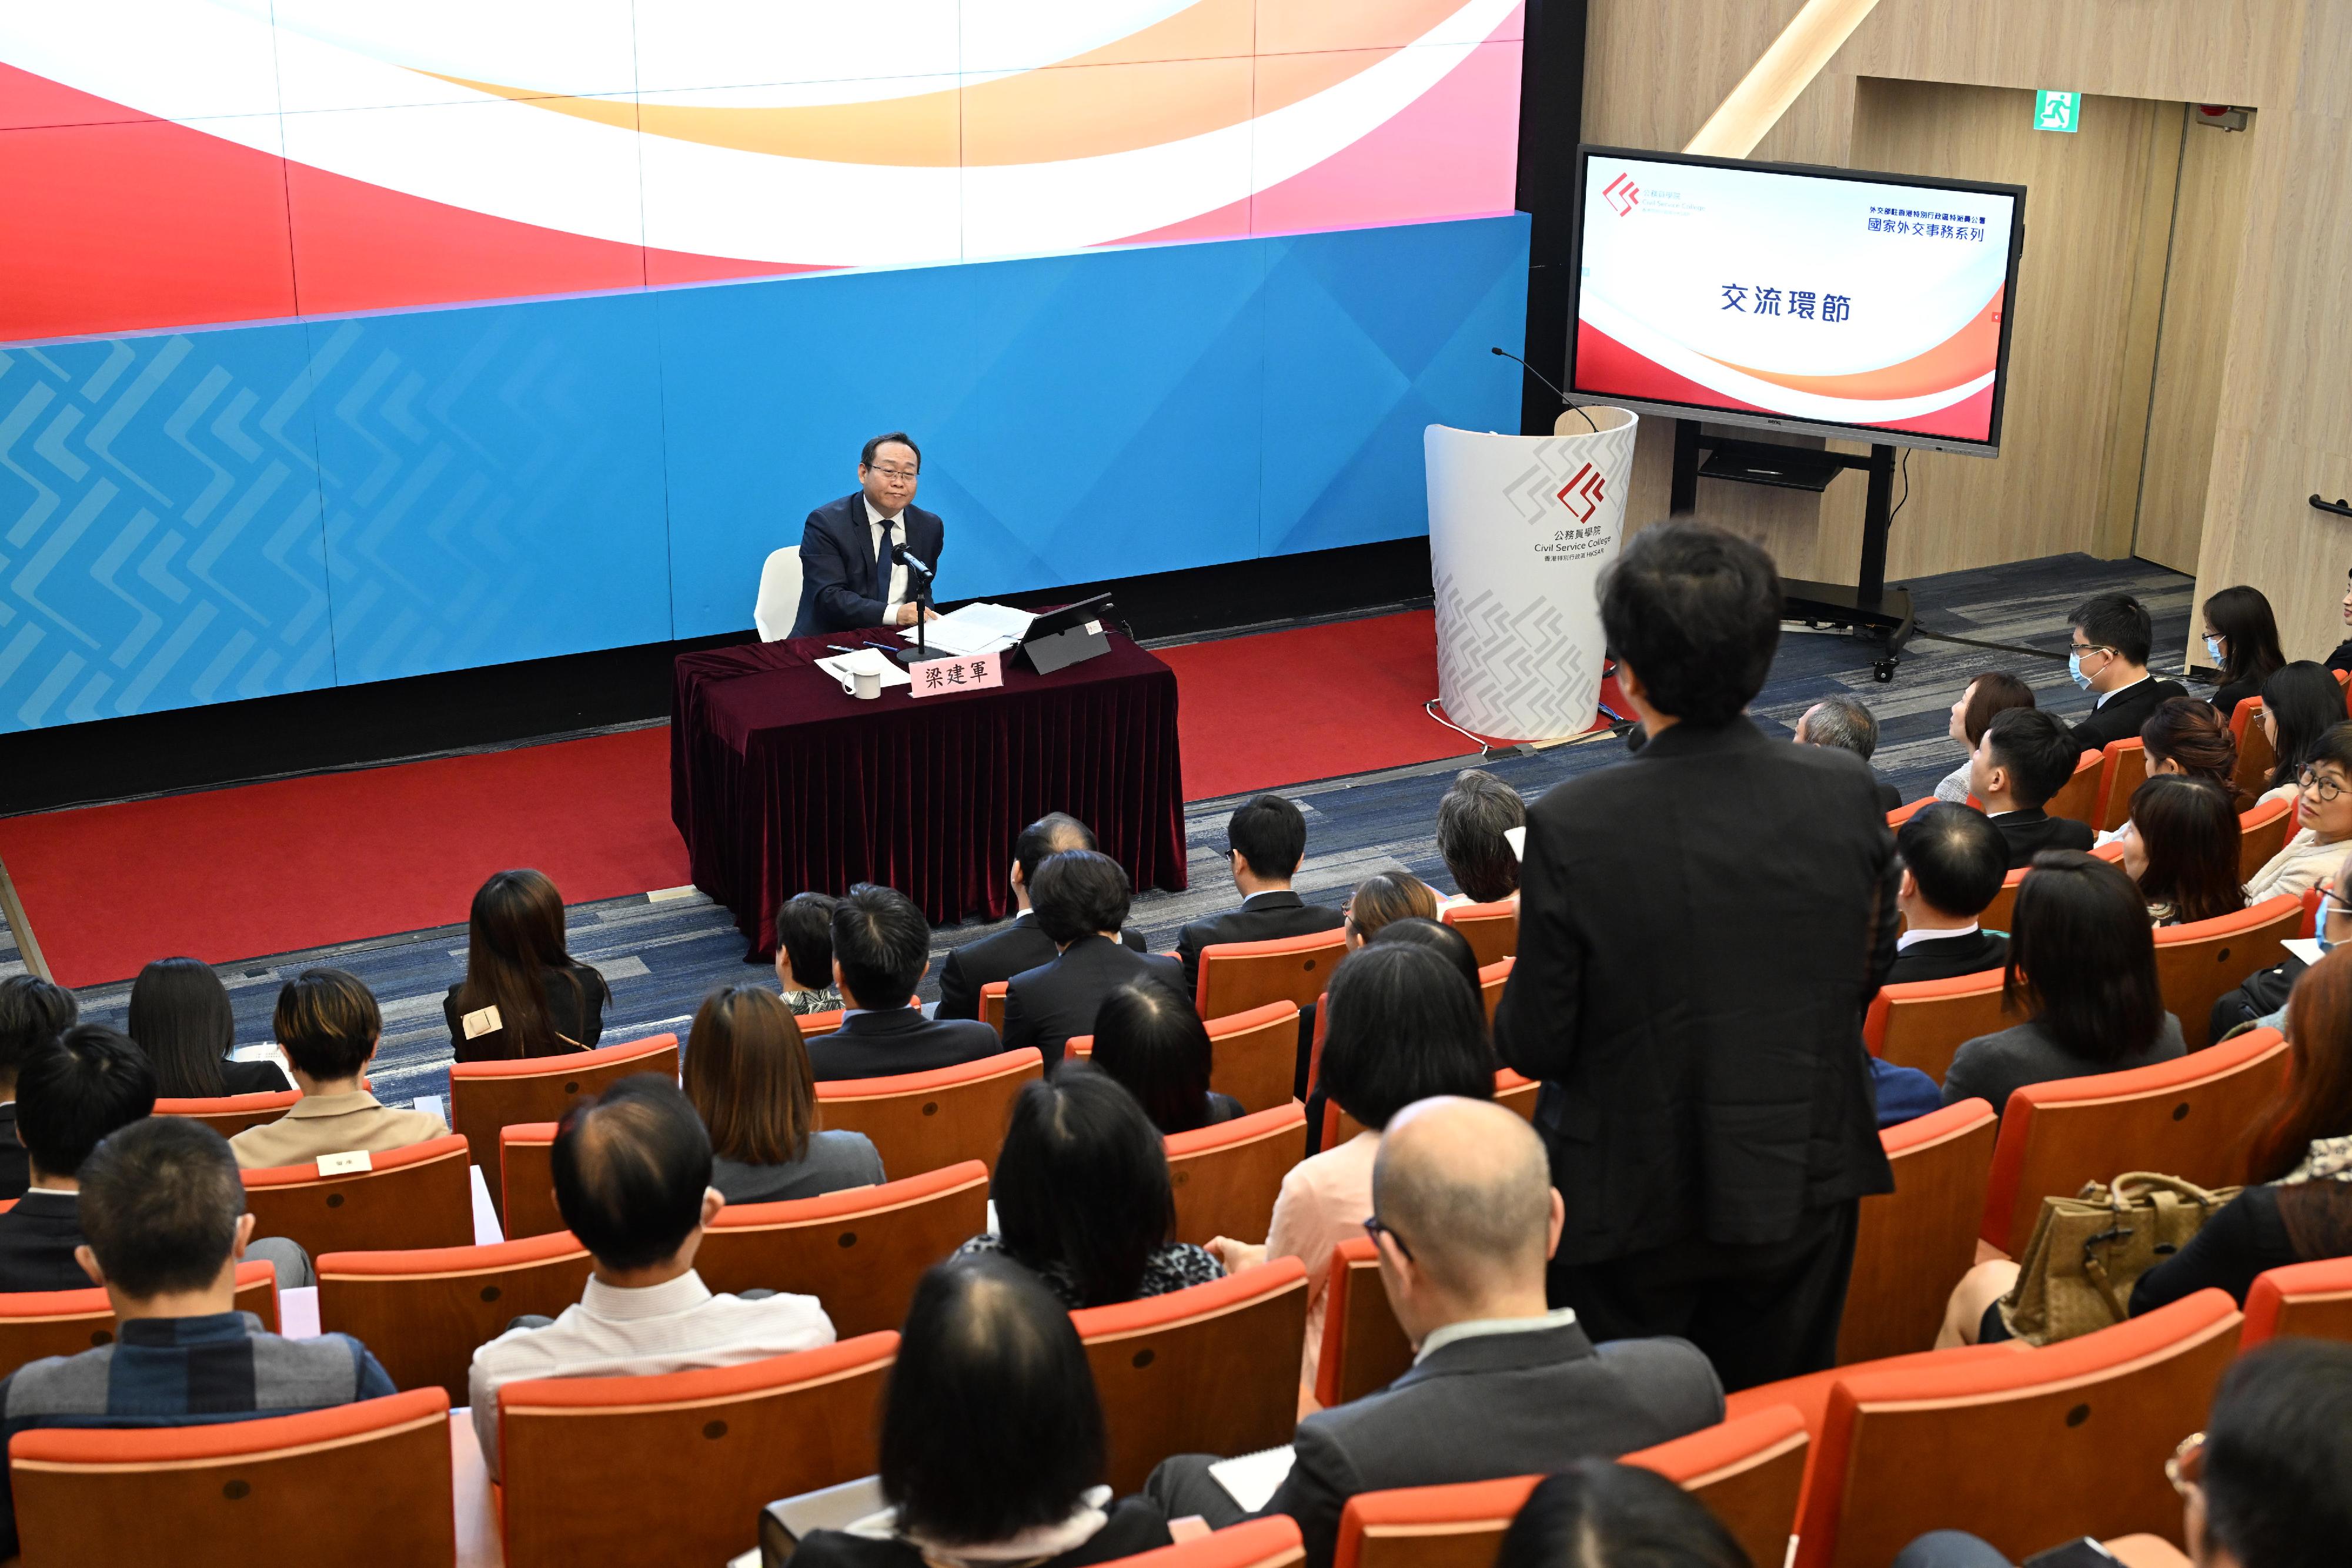 公务员学院今日（八月二十八日）与外交部驻香港特别行政区特派员公署举办「国家外交事务系列」讲座，主题为「中国与东南亚国家关系」。图示参与学员在交流环节发言。
 


